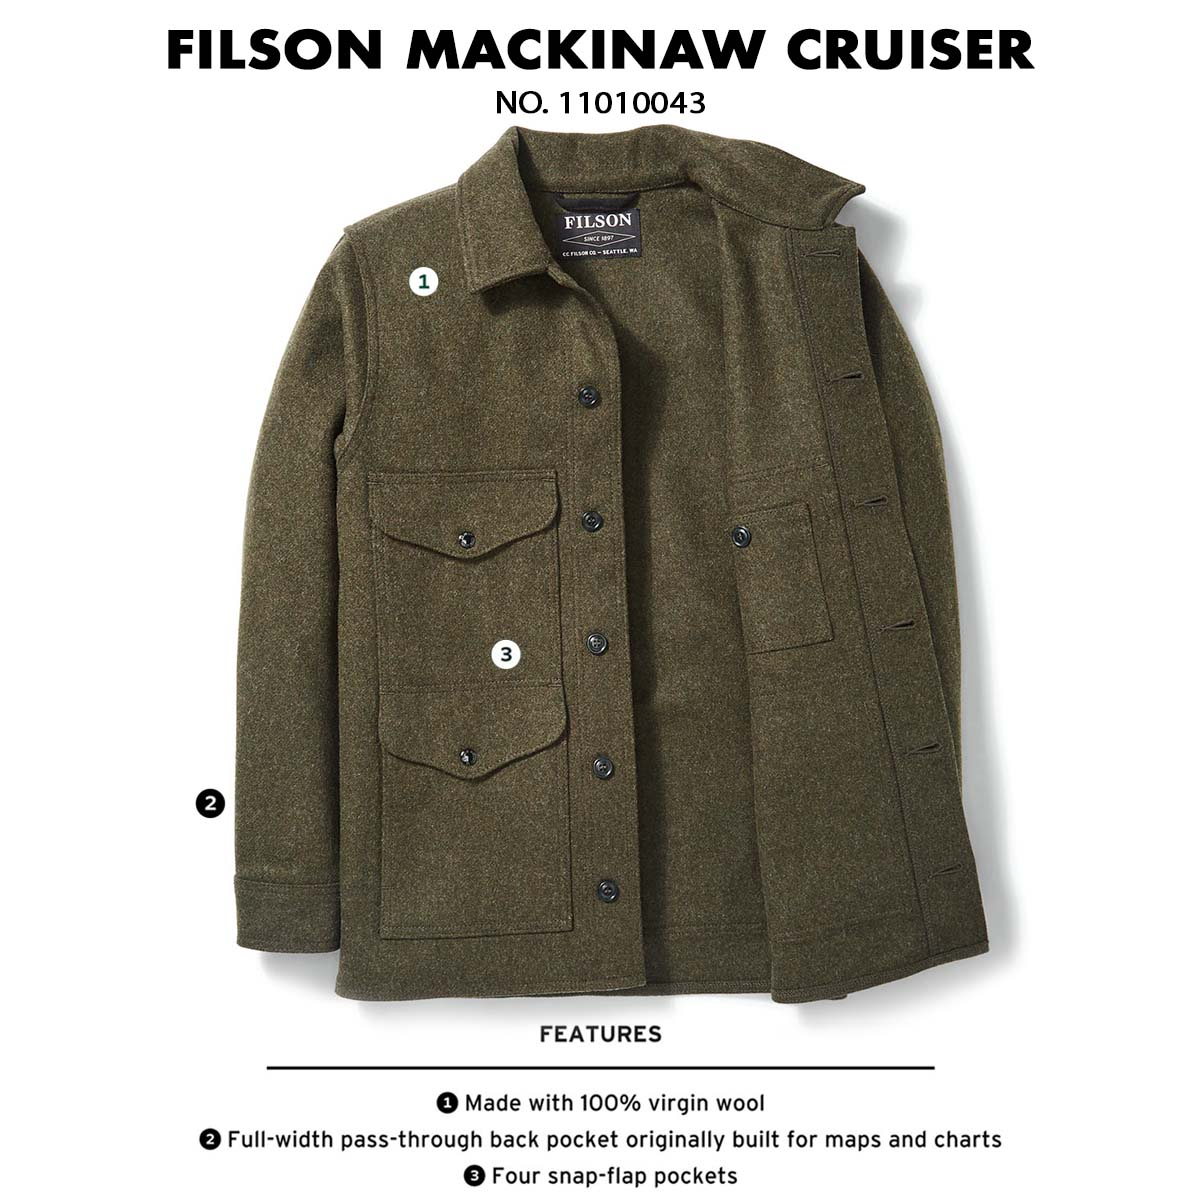 Filson Mackinaw Wool Cruiser Forest Green 11010043, features